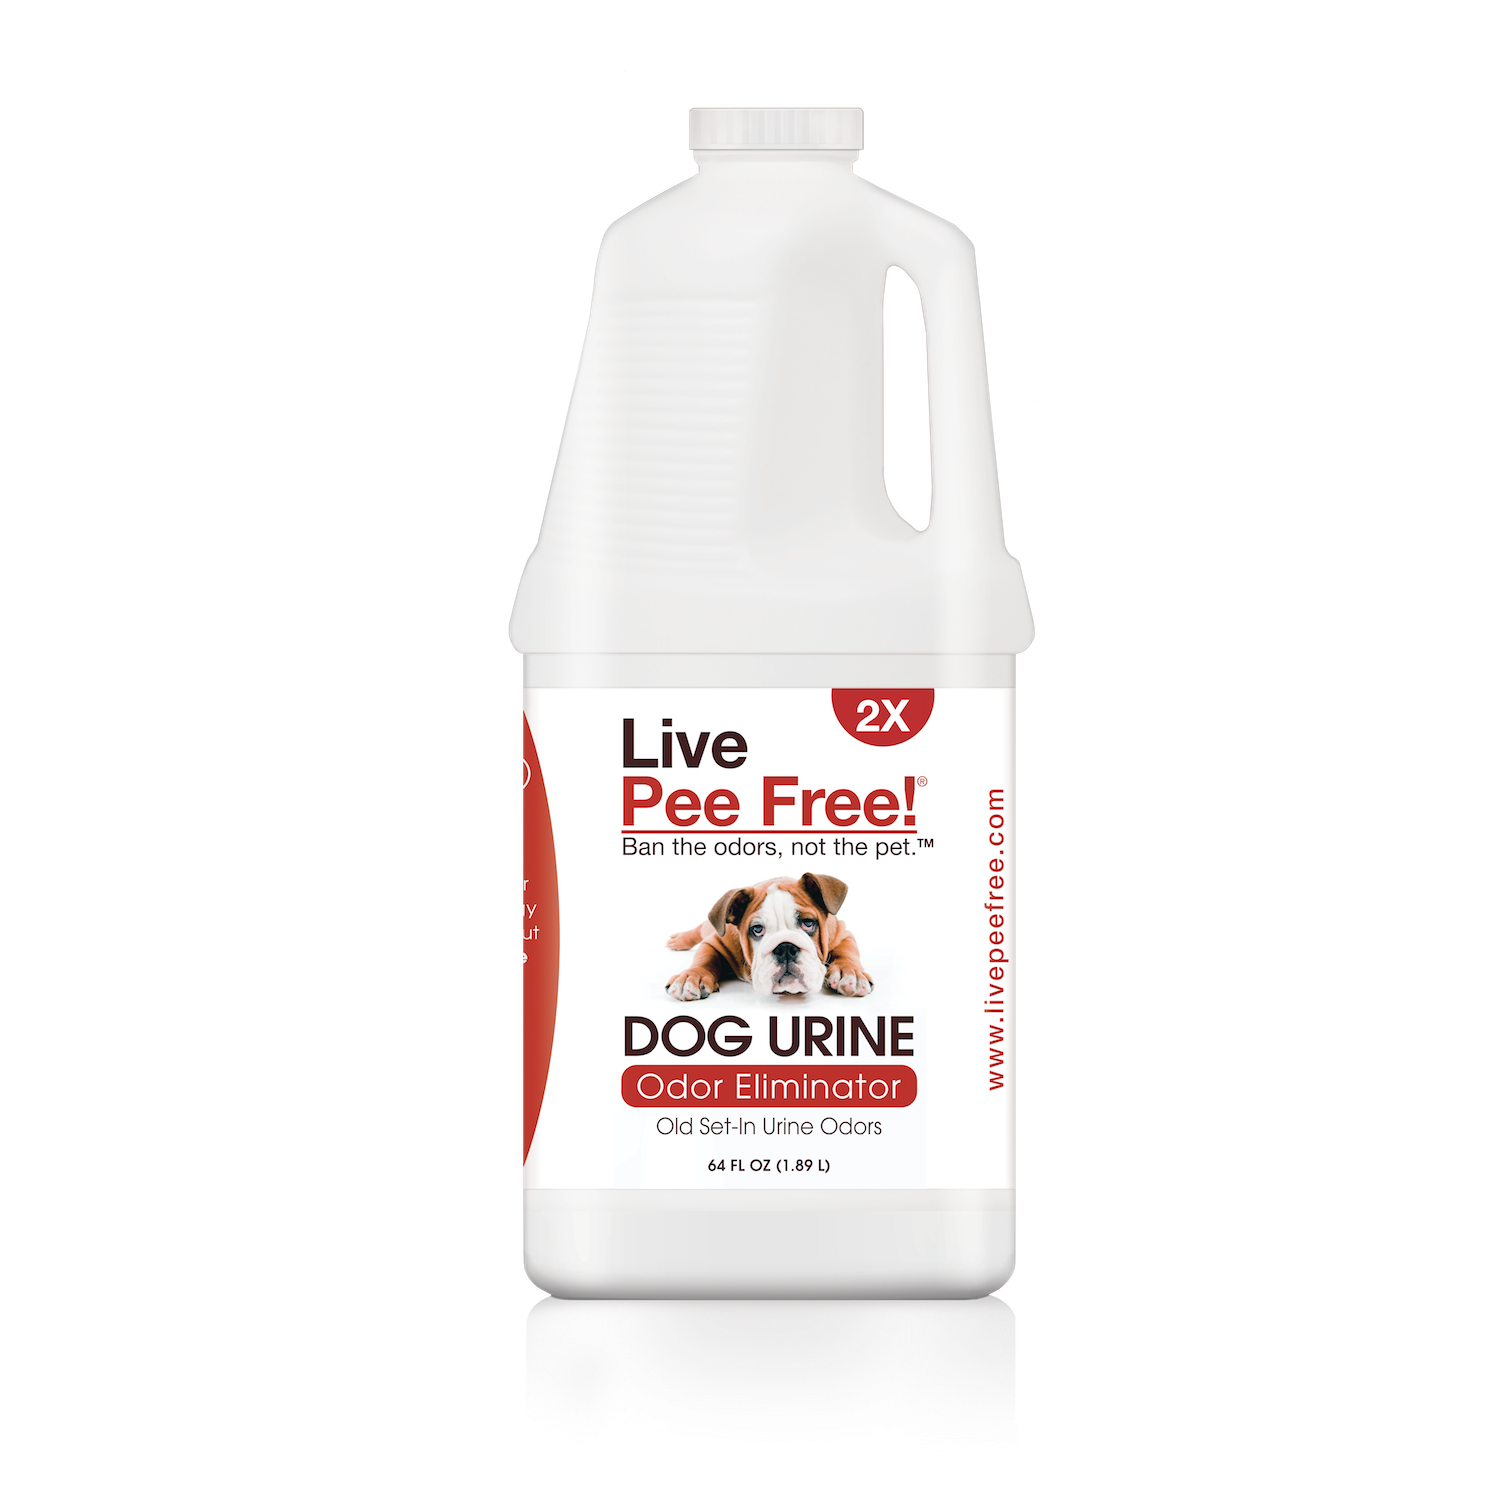 Live Odor Free!® Dog Urine 2X